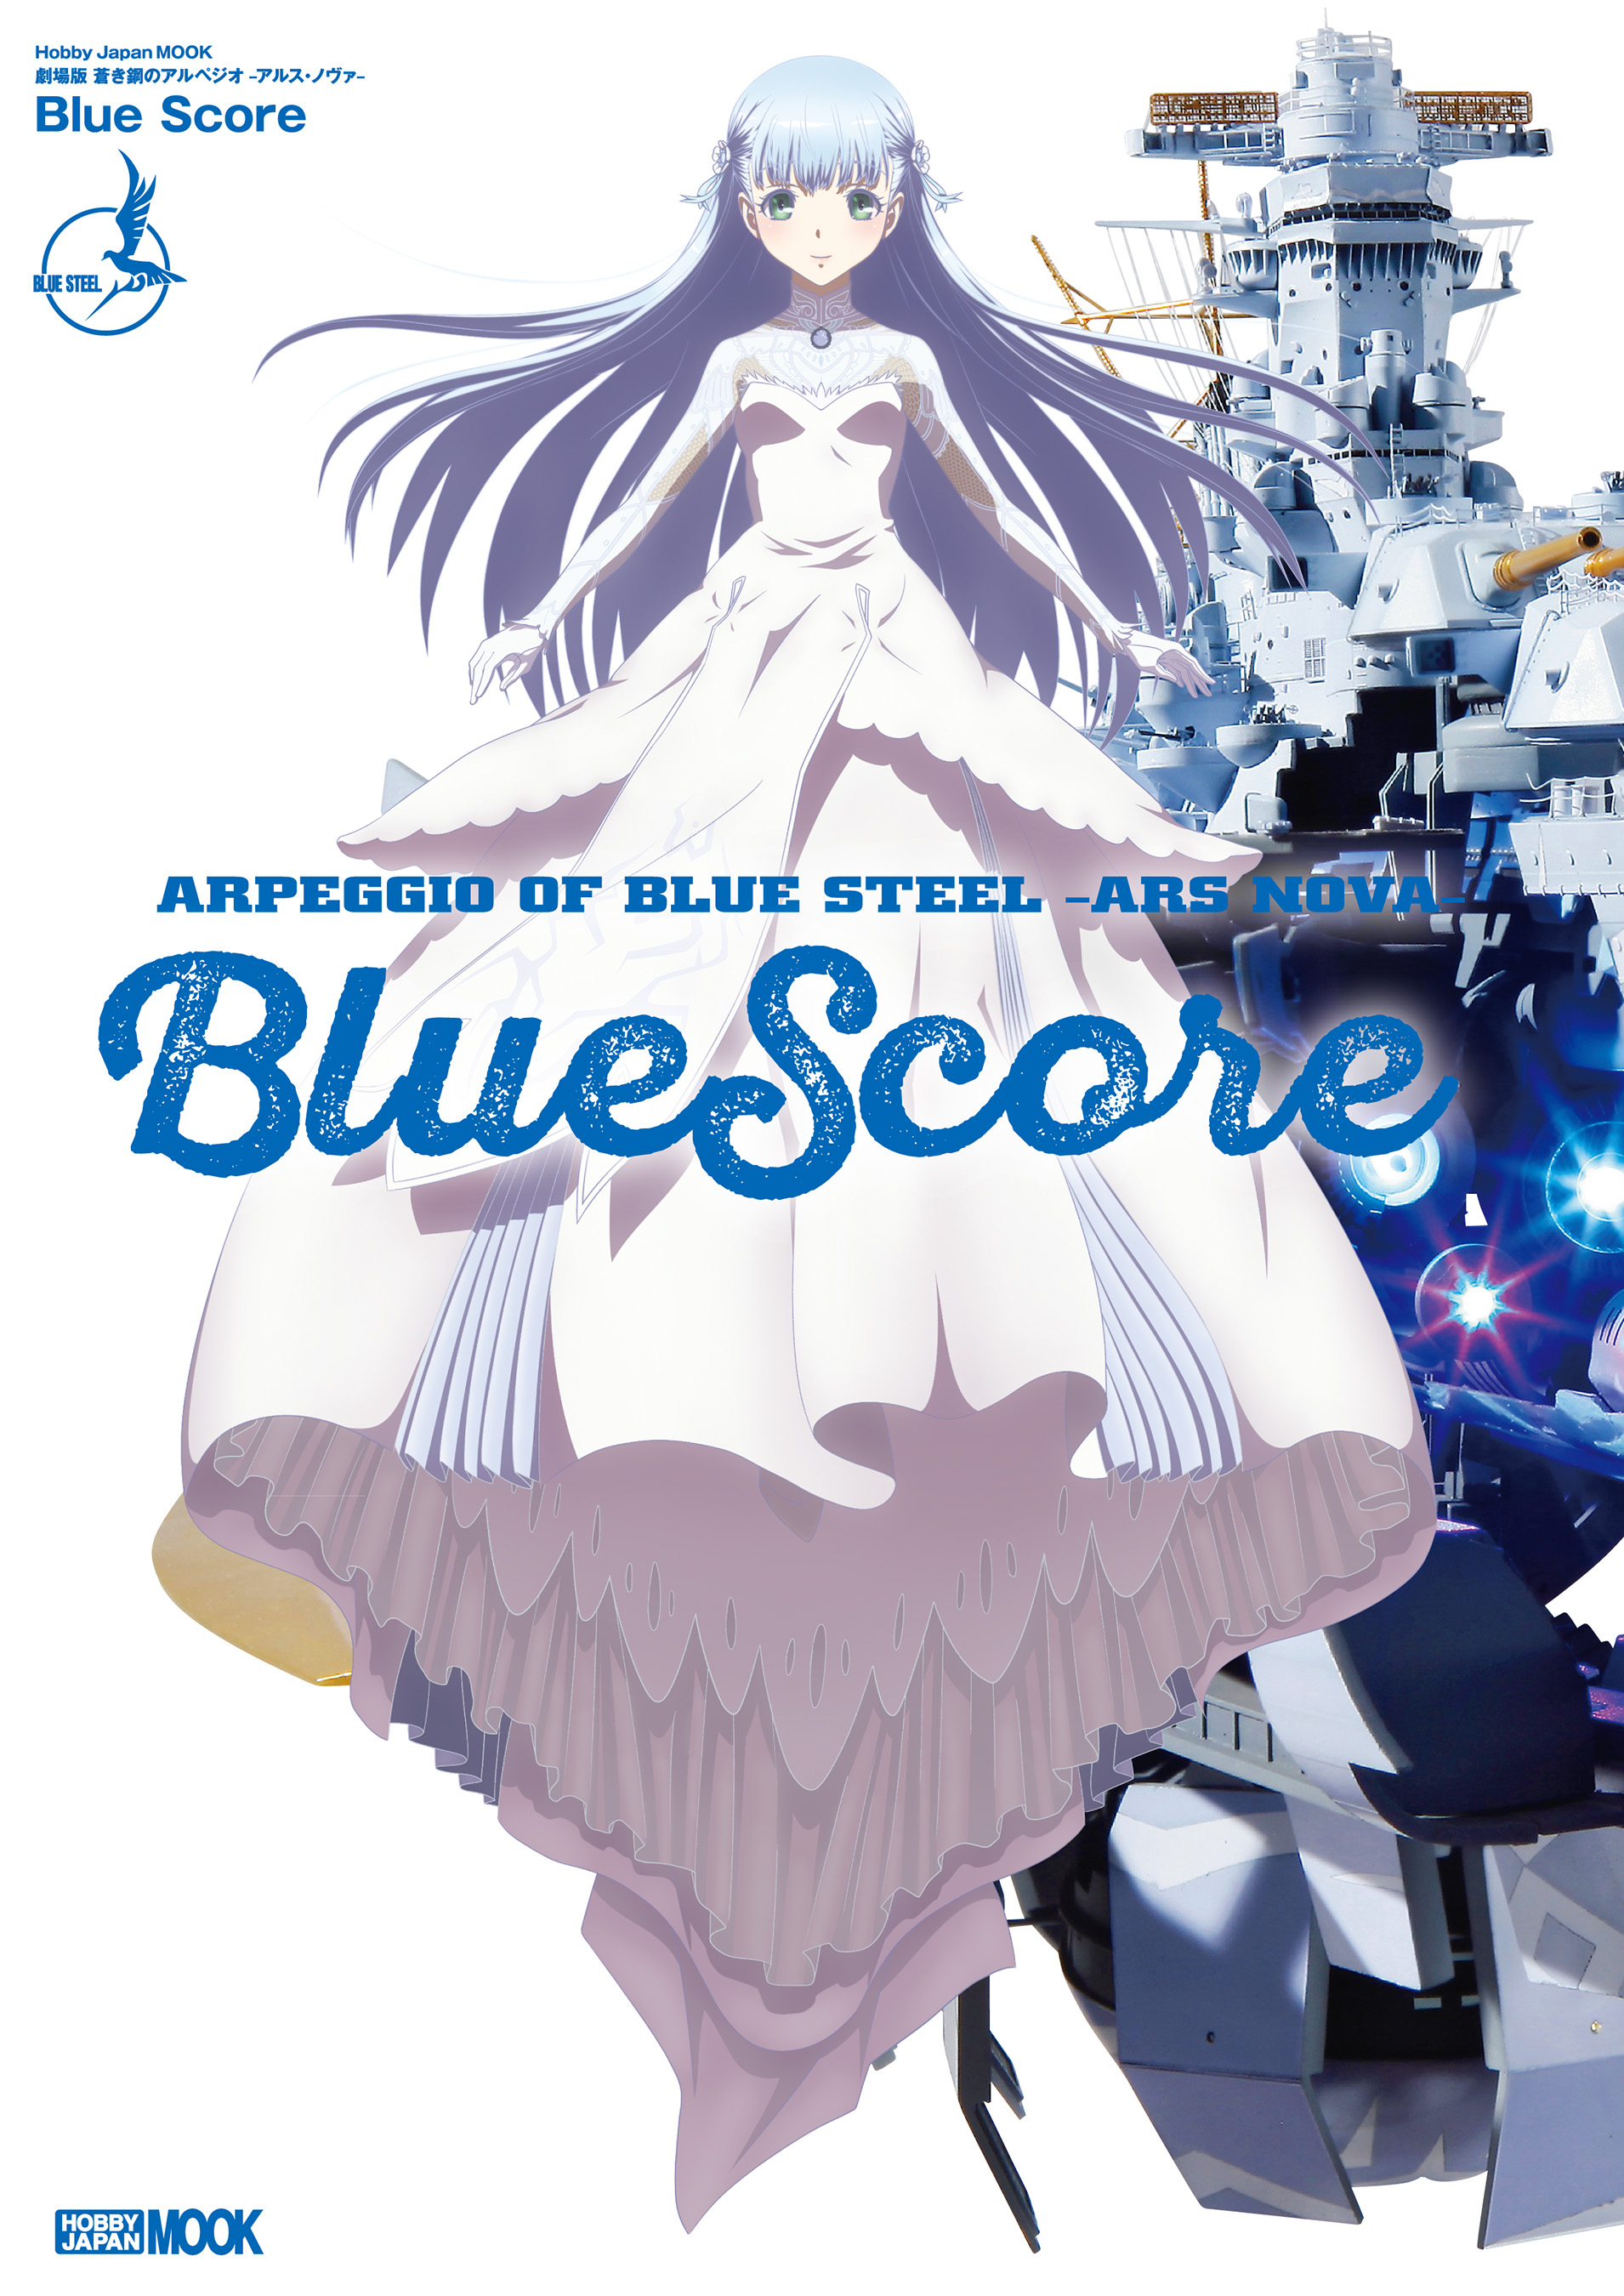 劇場版 蒼き鋼のアルペジオ-アルス・ノヴァ- Blue Score - ホビー 